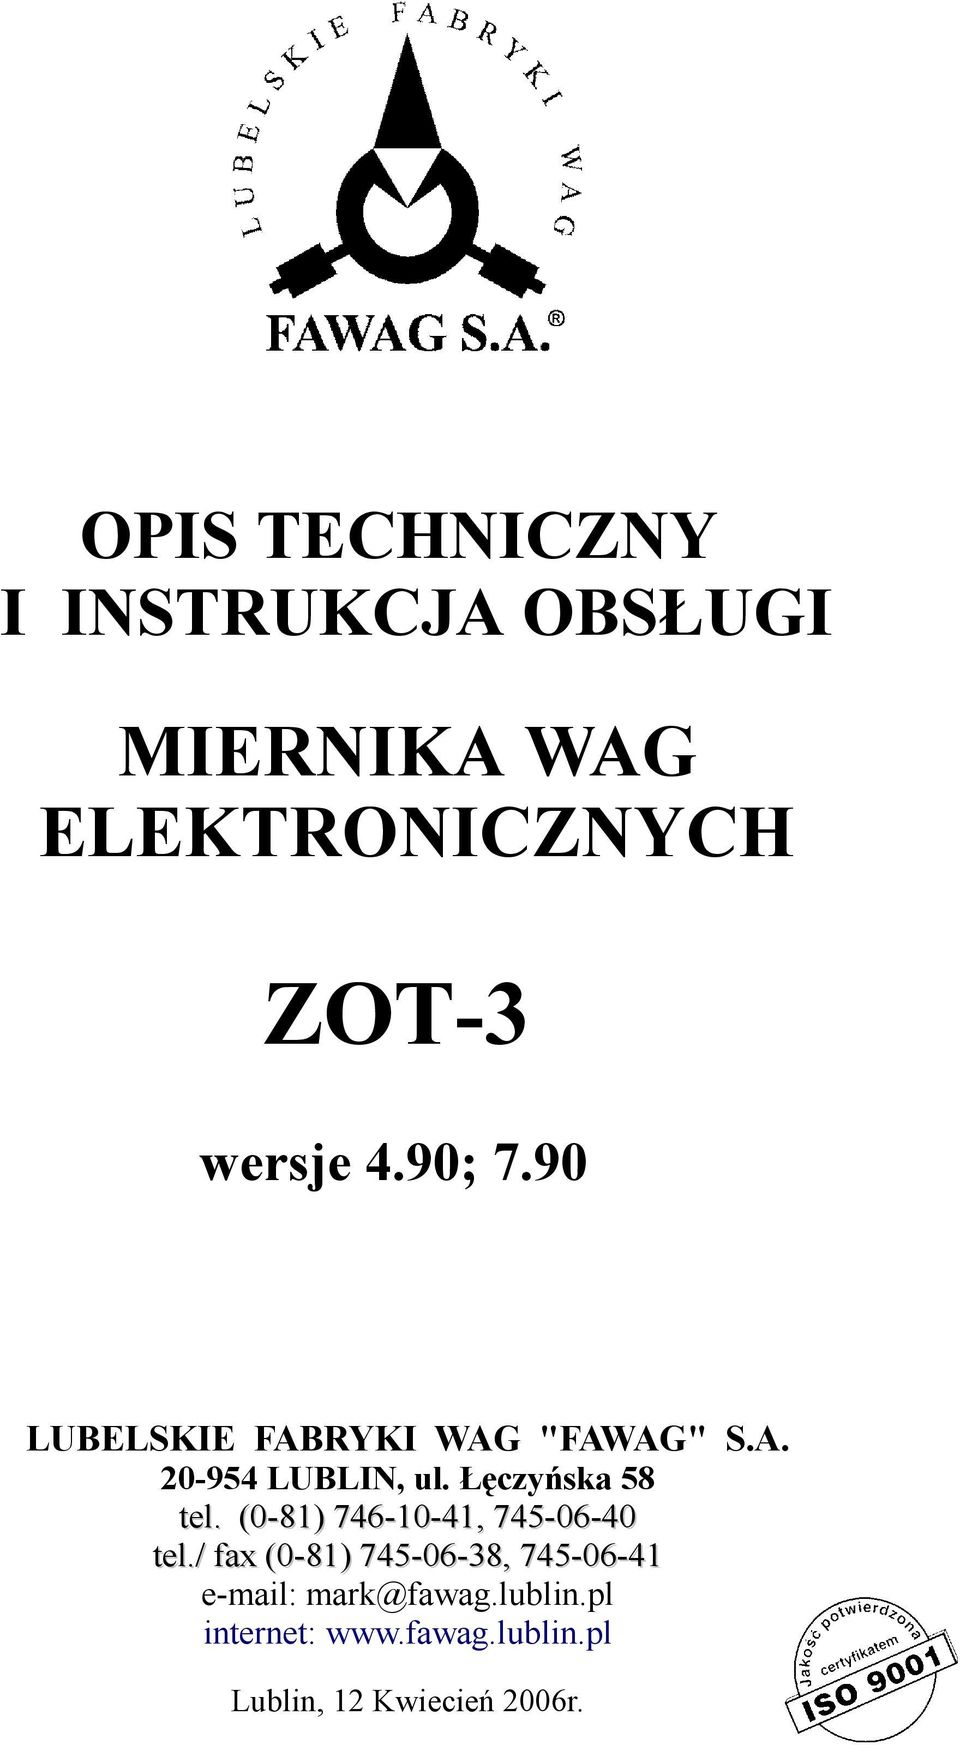 Łęczyńska 58 tel. (0-81) 746-10-41, 745-06-40 tel.